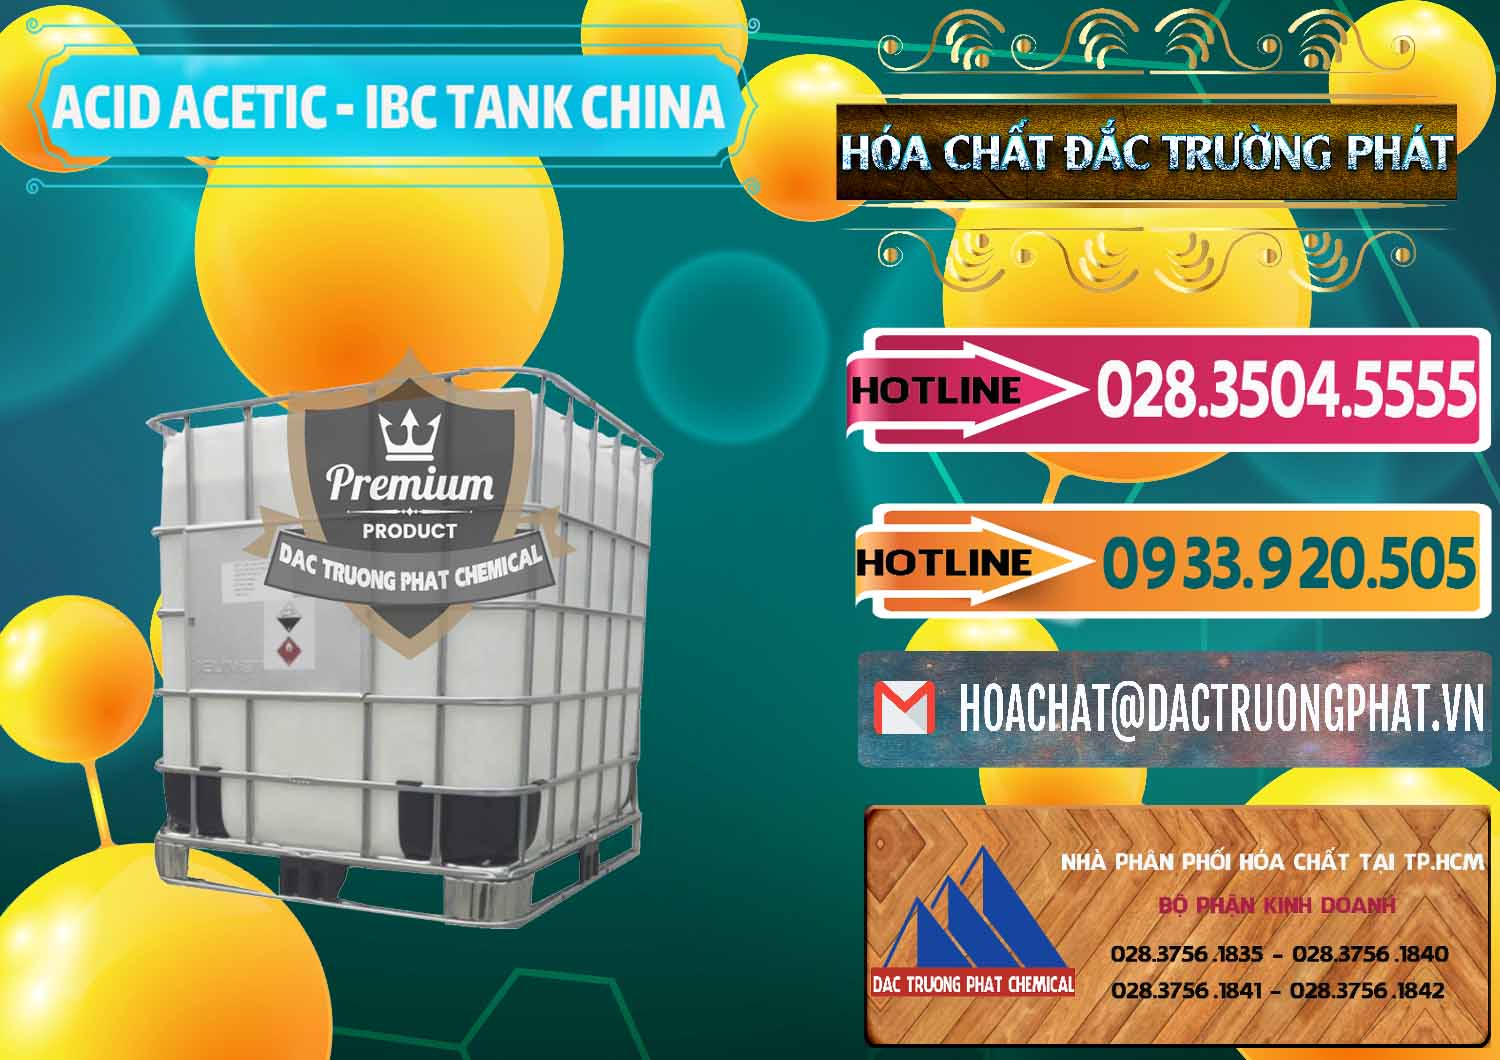 Đơn vị chuyên cung cấp ( bán ) Acetic Acid – Axit Acetic Tank Bồn IBC Trung Quốc China - 0443 - Nhà cung cấp - phân phối hóa chất tại TP.HCM - dactruongphat.vn